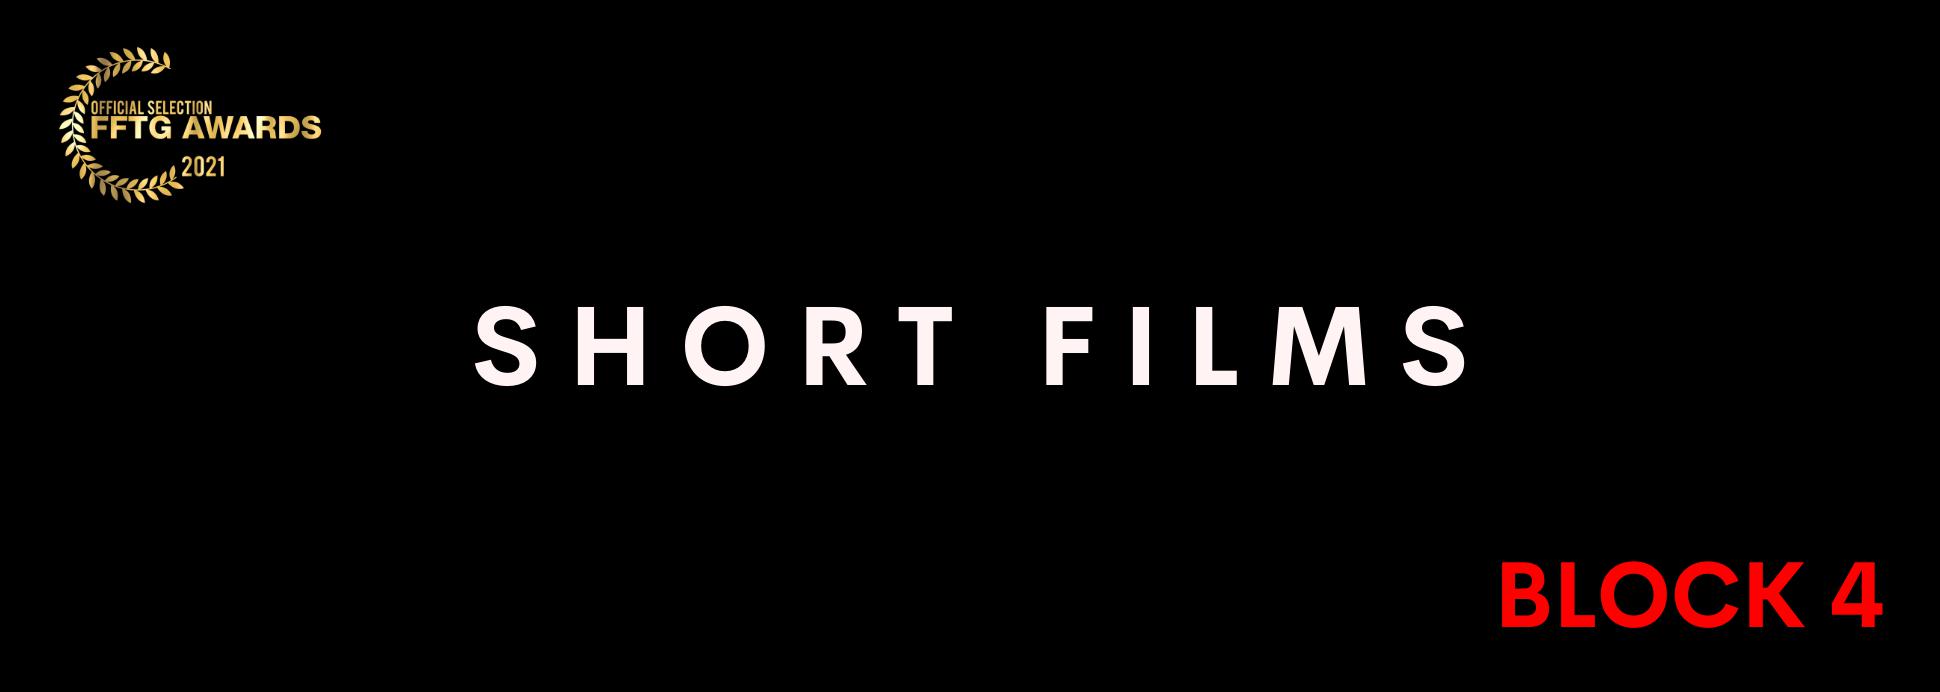 Short films BLOCK 4